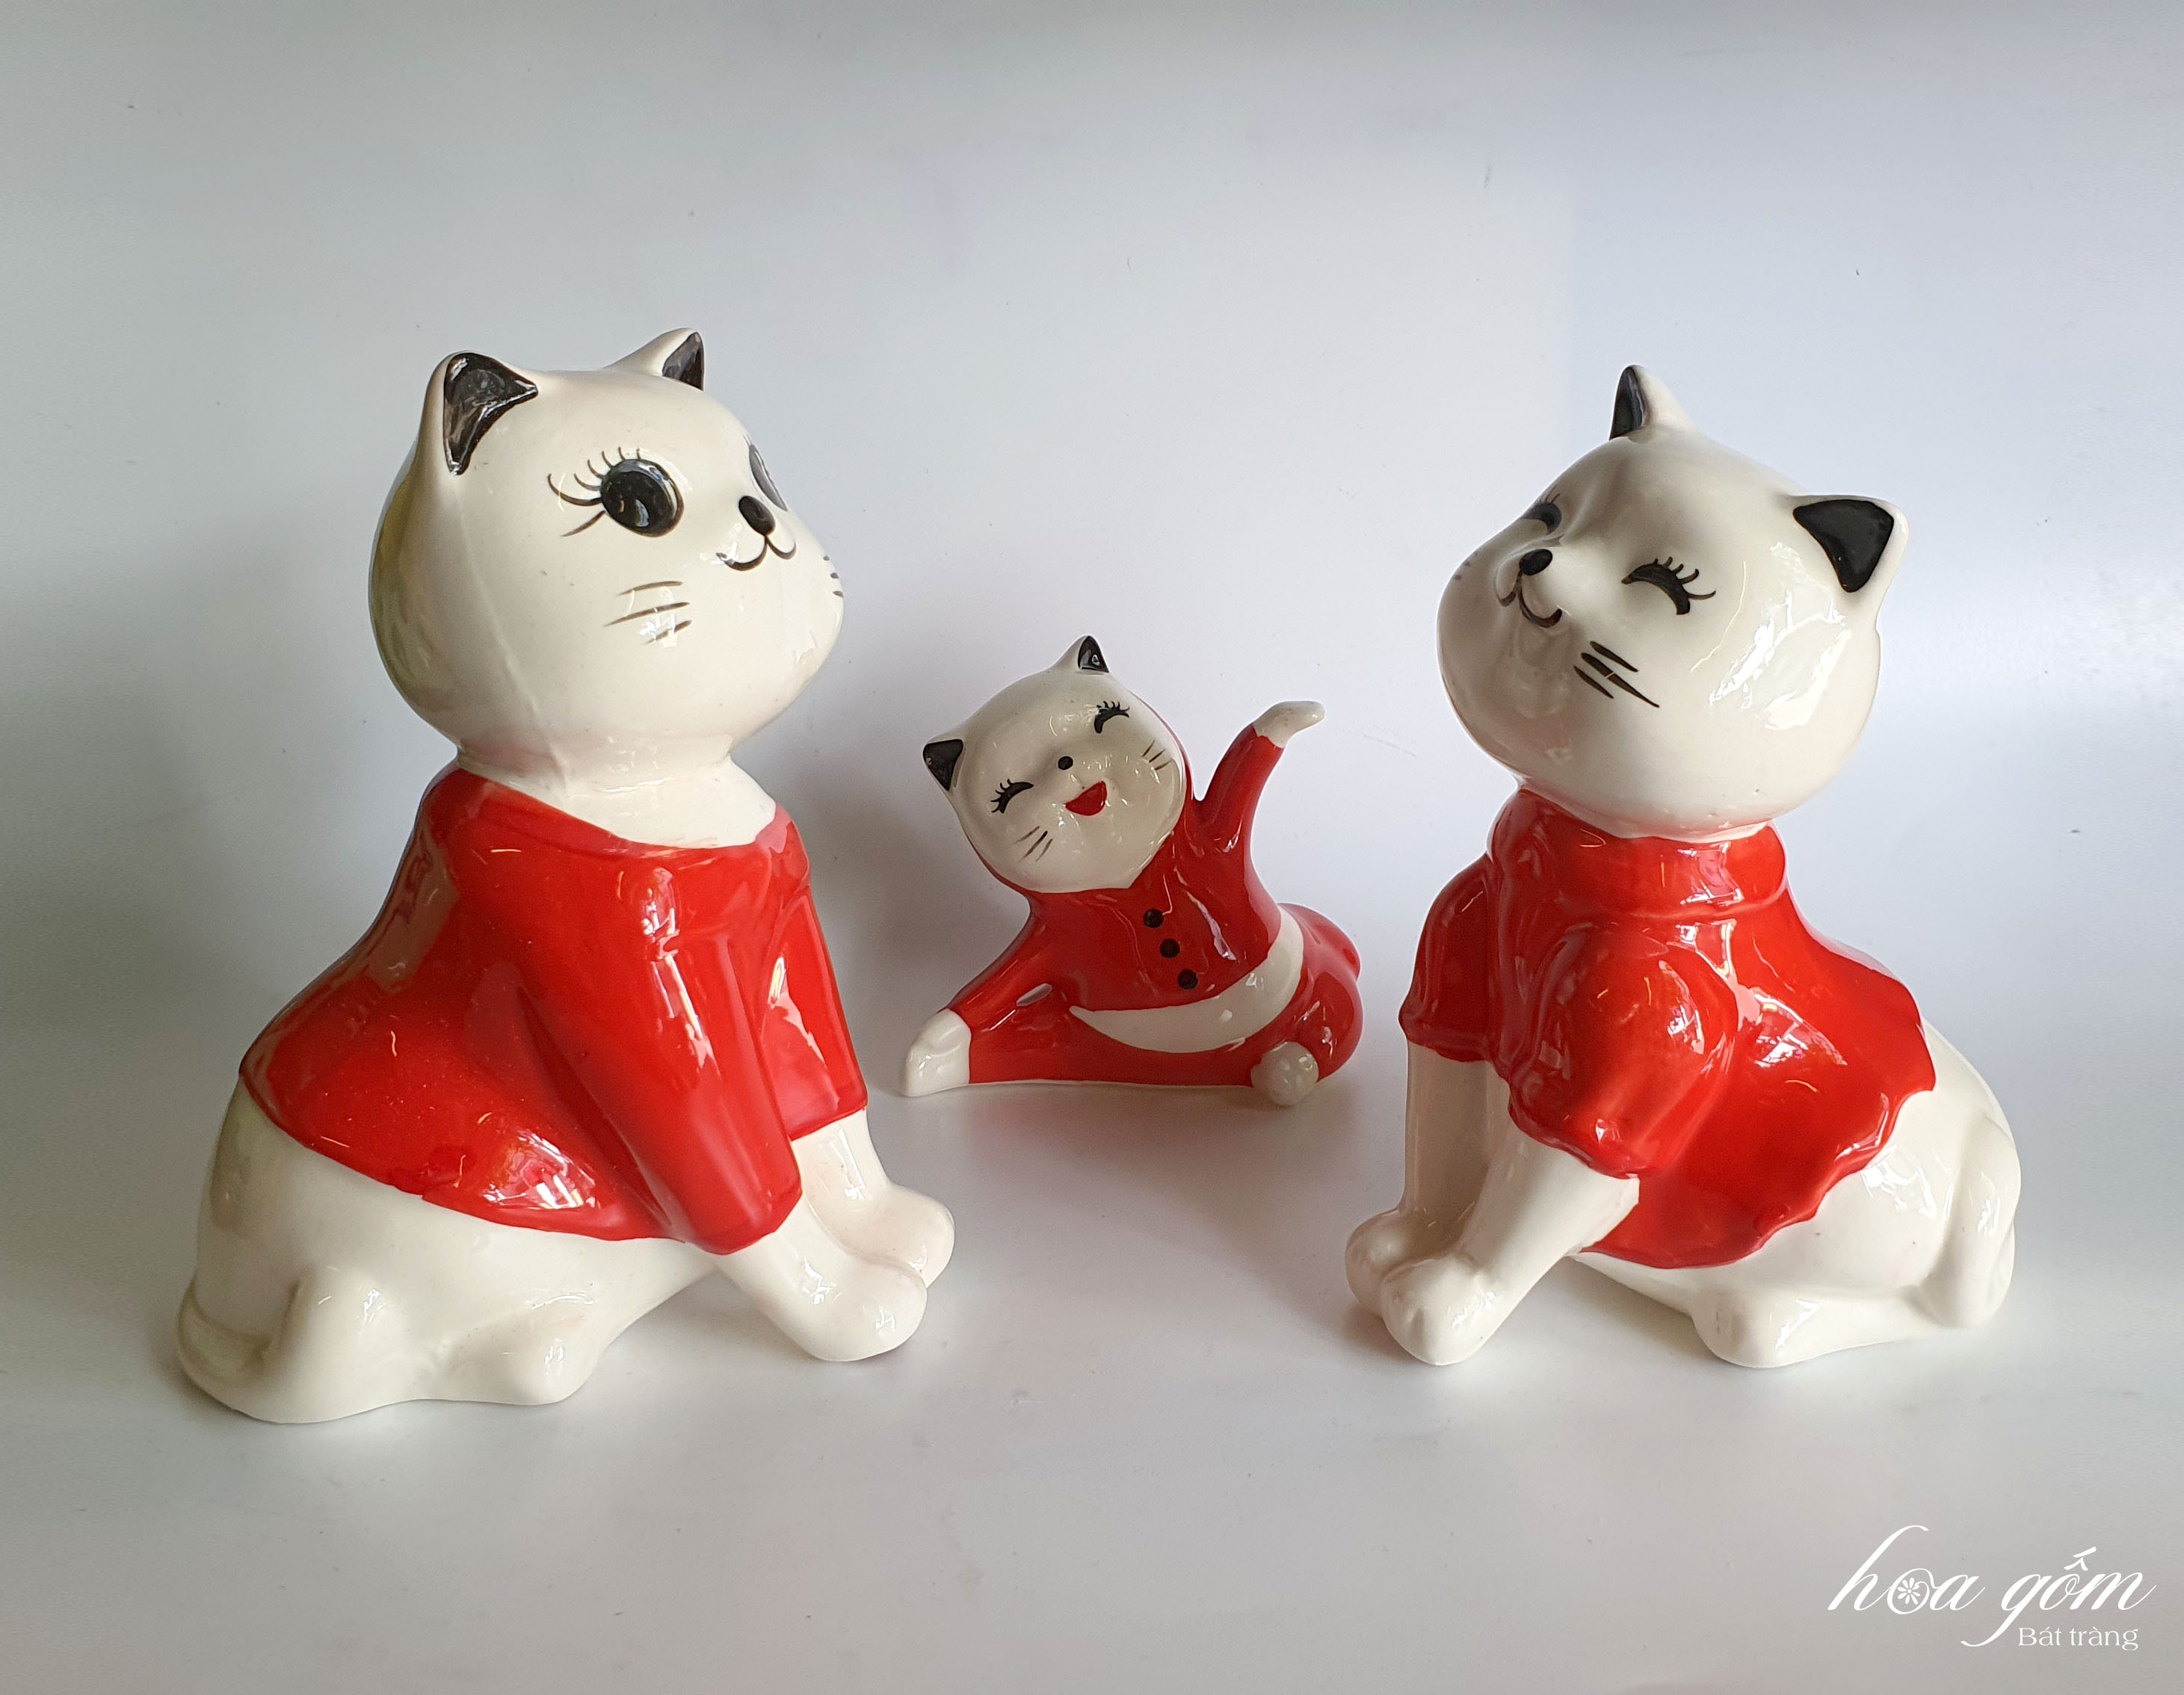 Thú bộ trang trí, bộ 3 mèo màu đỏ với nét vẽ và biểu cảm xinh xắn dễ thương, phụ kiện trang trí không gian nhà cửa, văn phòng và là món quà ý nghĩa dành tặng bạn bè, người thân. Giao từ HCM